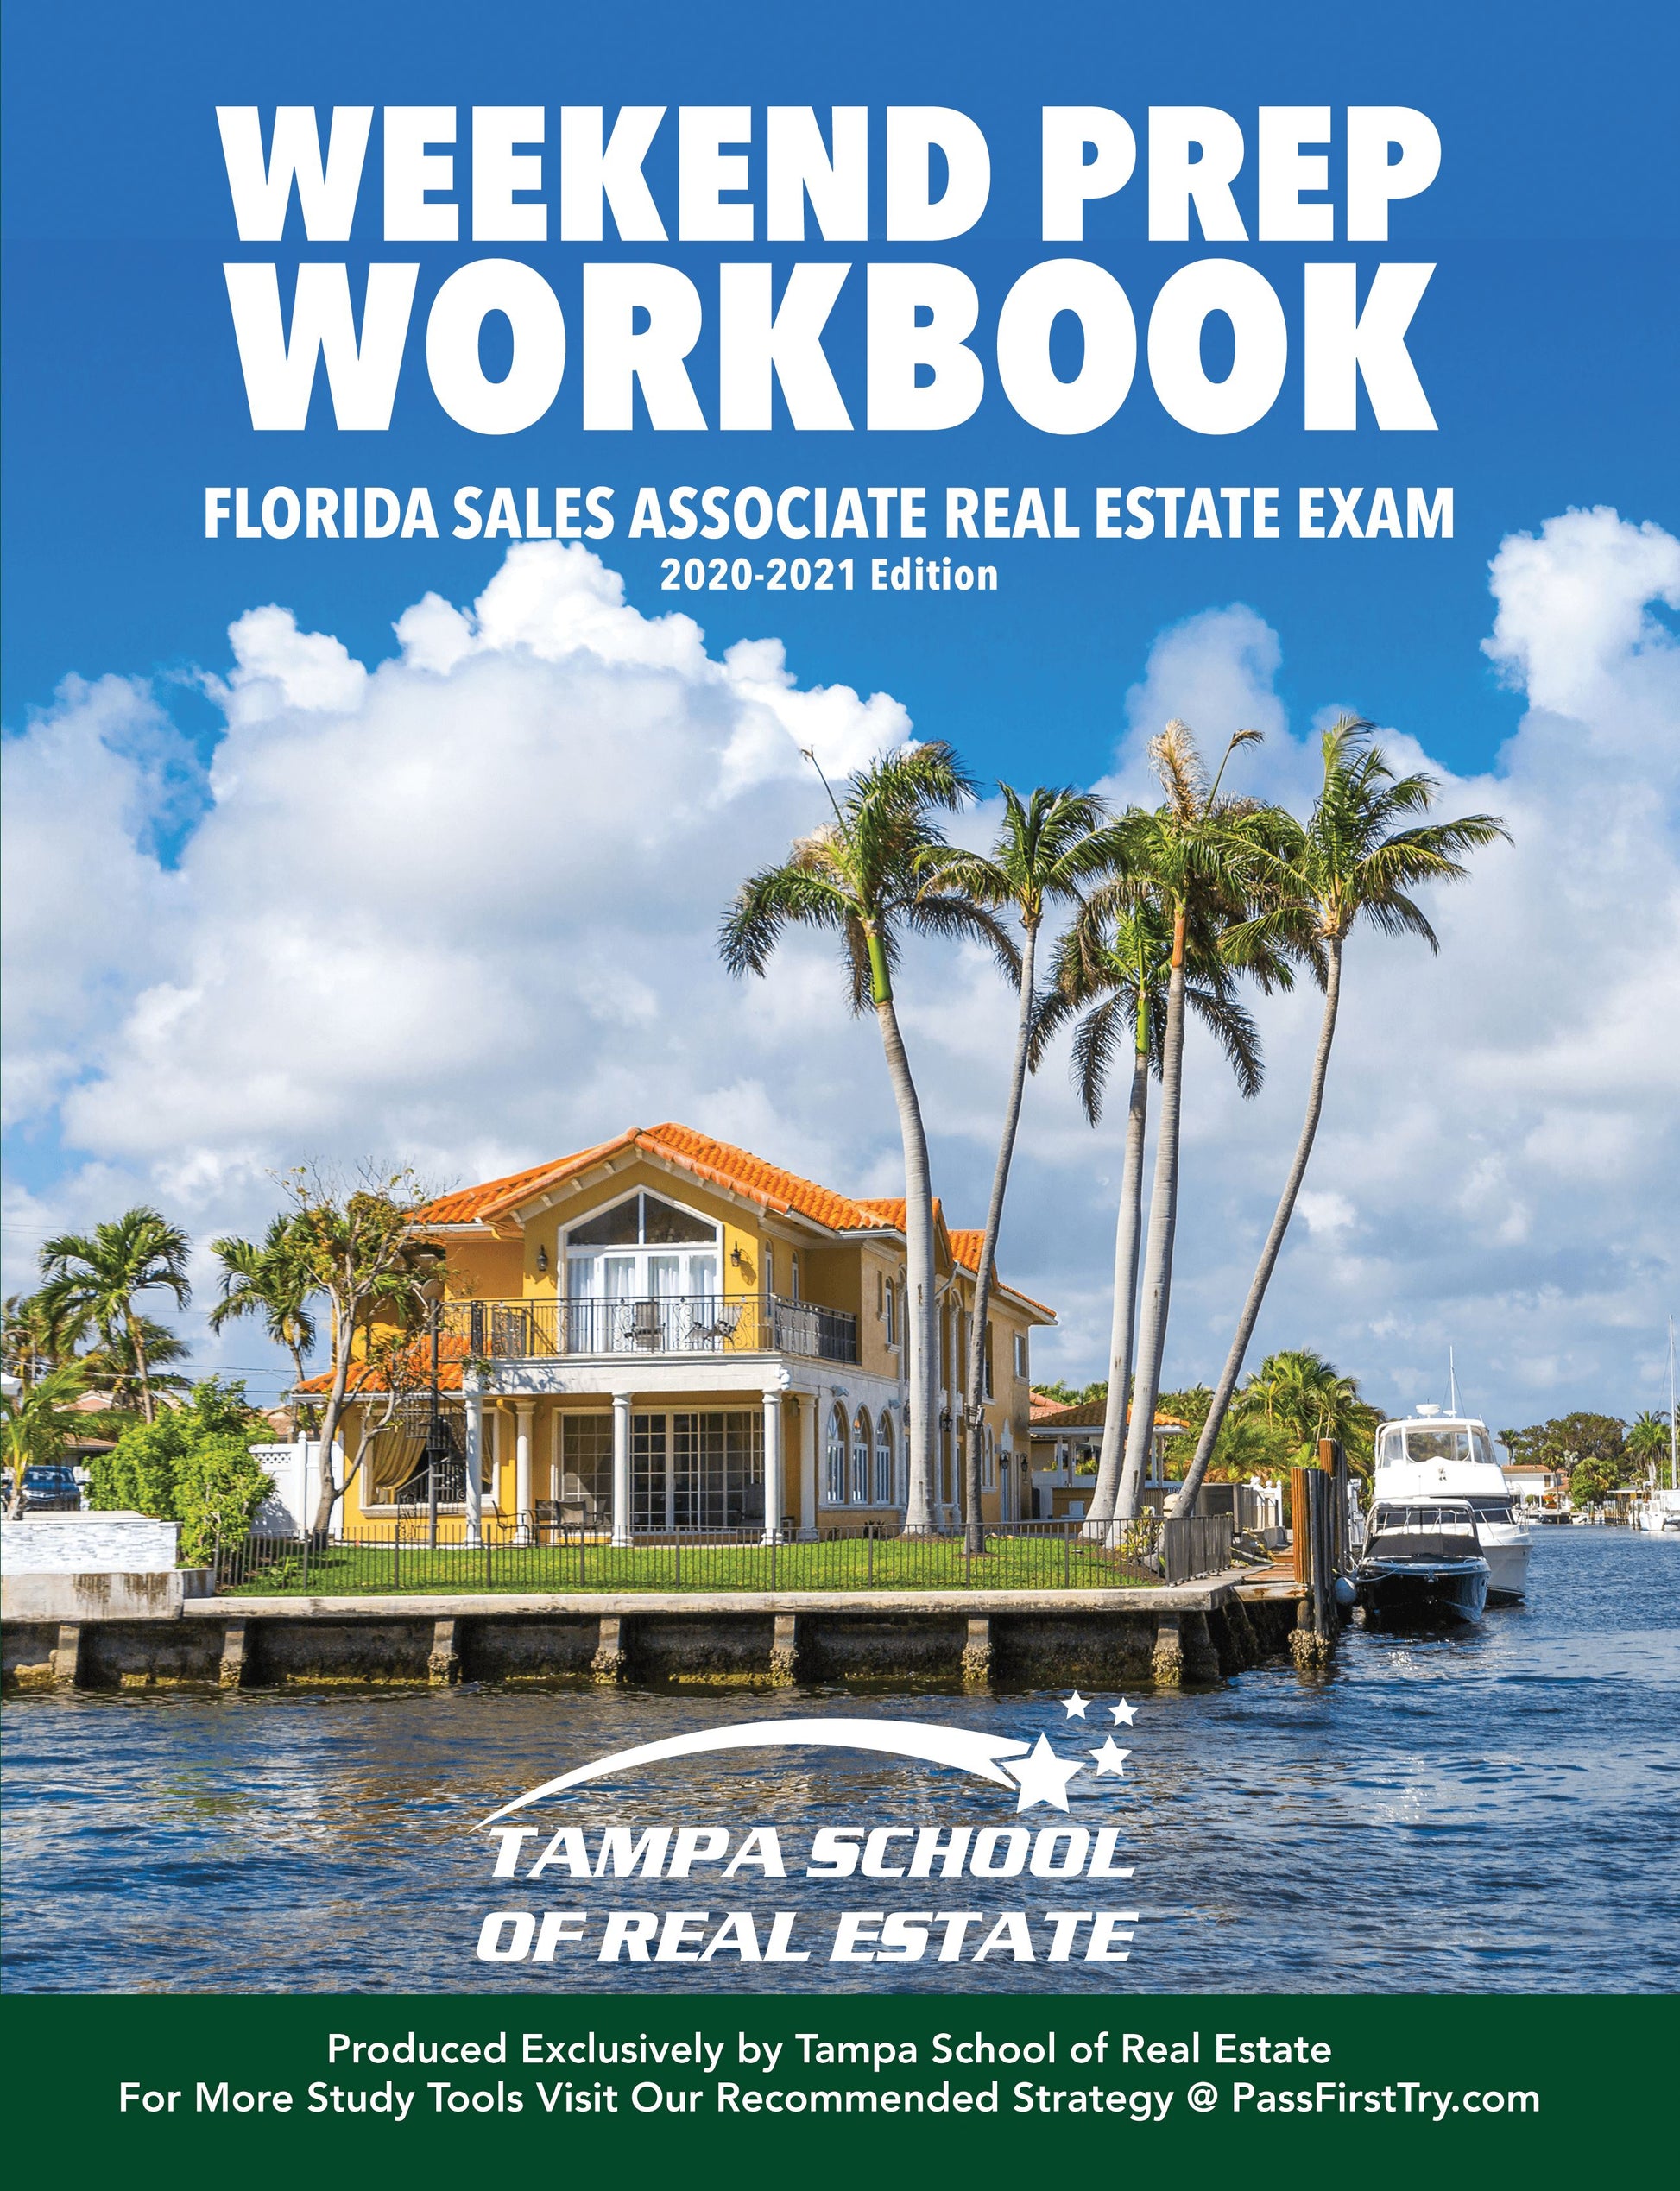 Weekend Prep Workbook Textbook Tampa School of Real Estate 